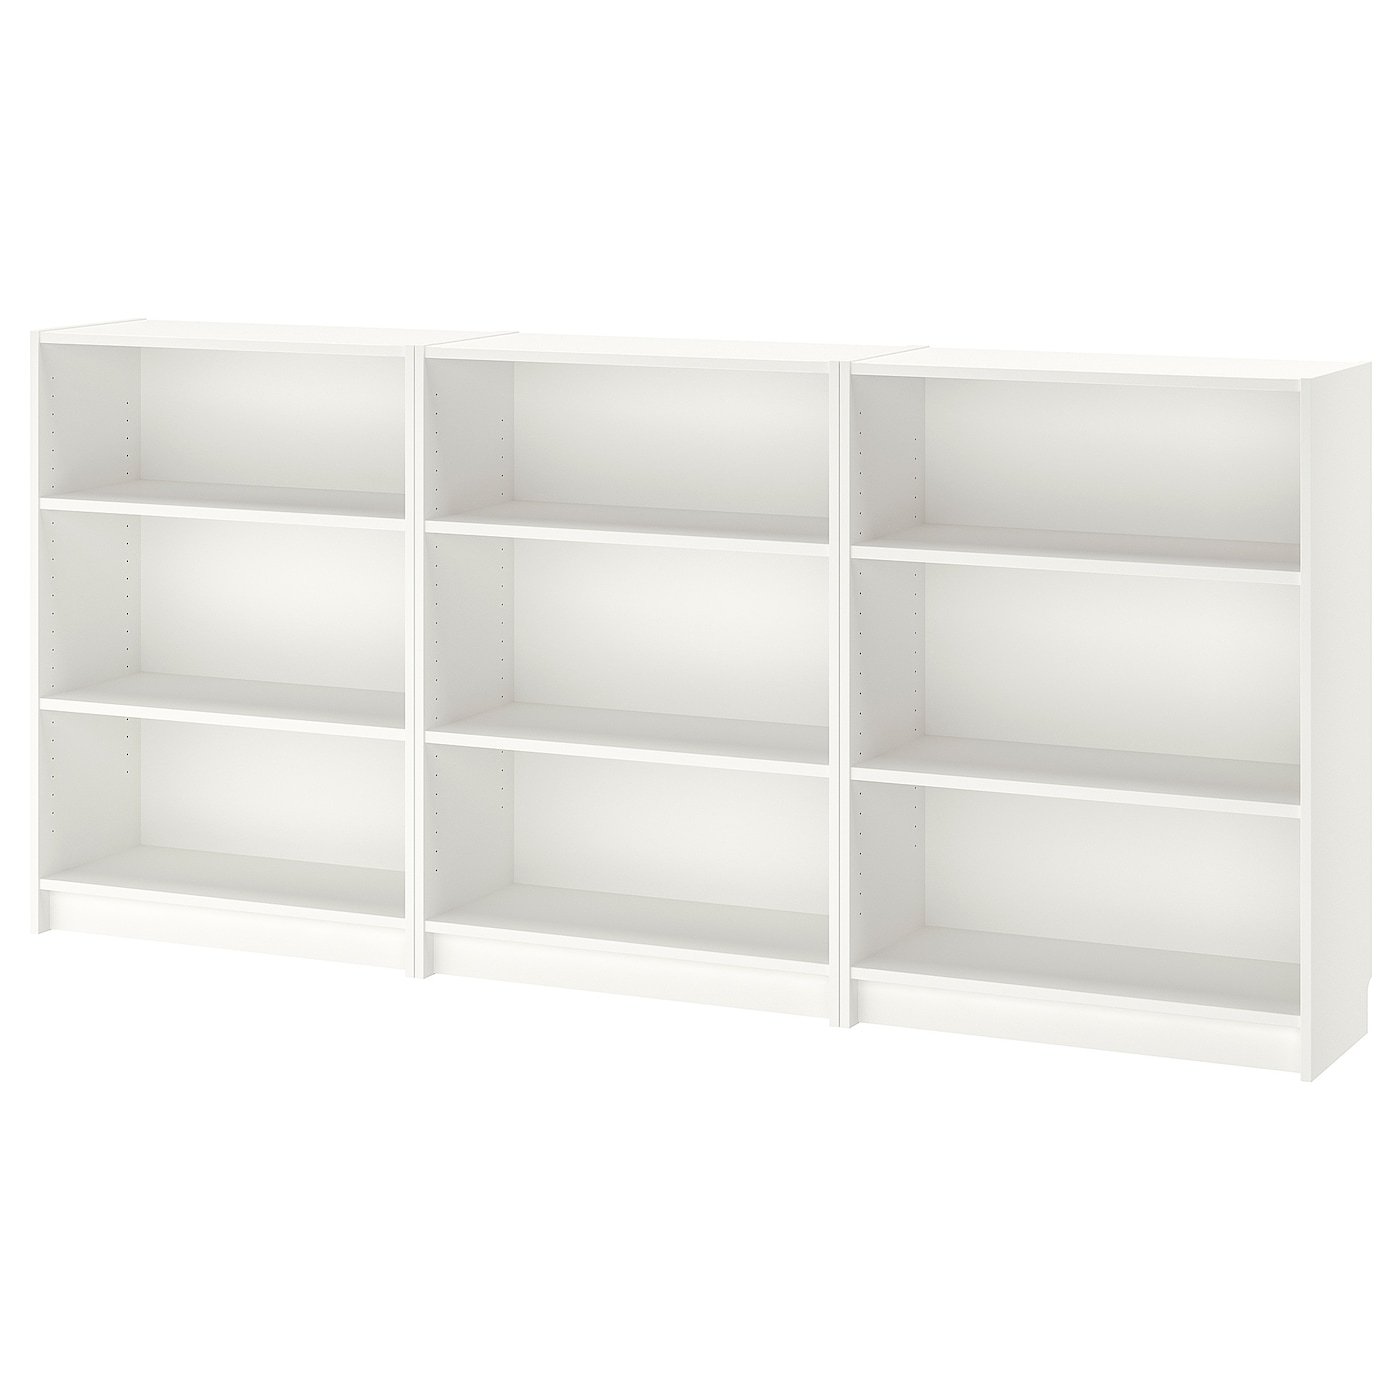 Открытый книжный шкаф - BILLY IKEA/БИЛЛИ ИКЕА, 28х240х106 см, белый